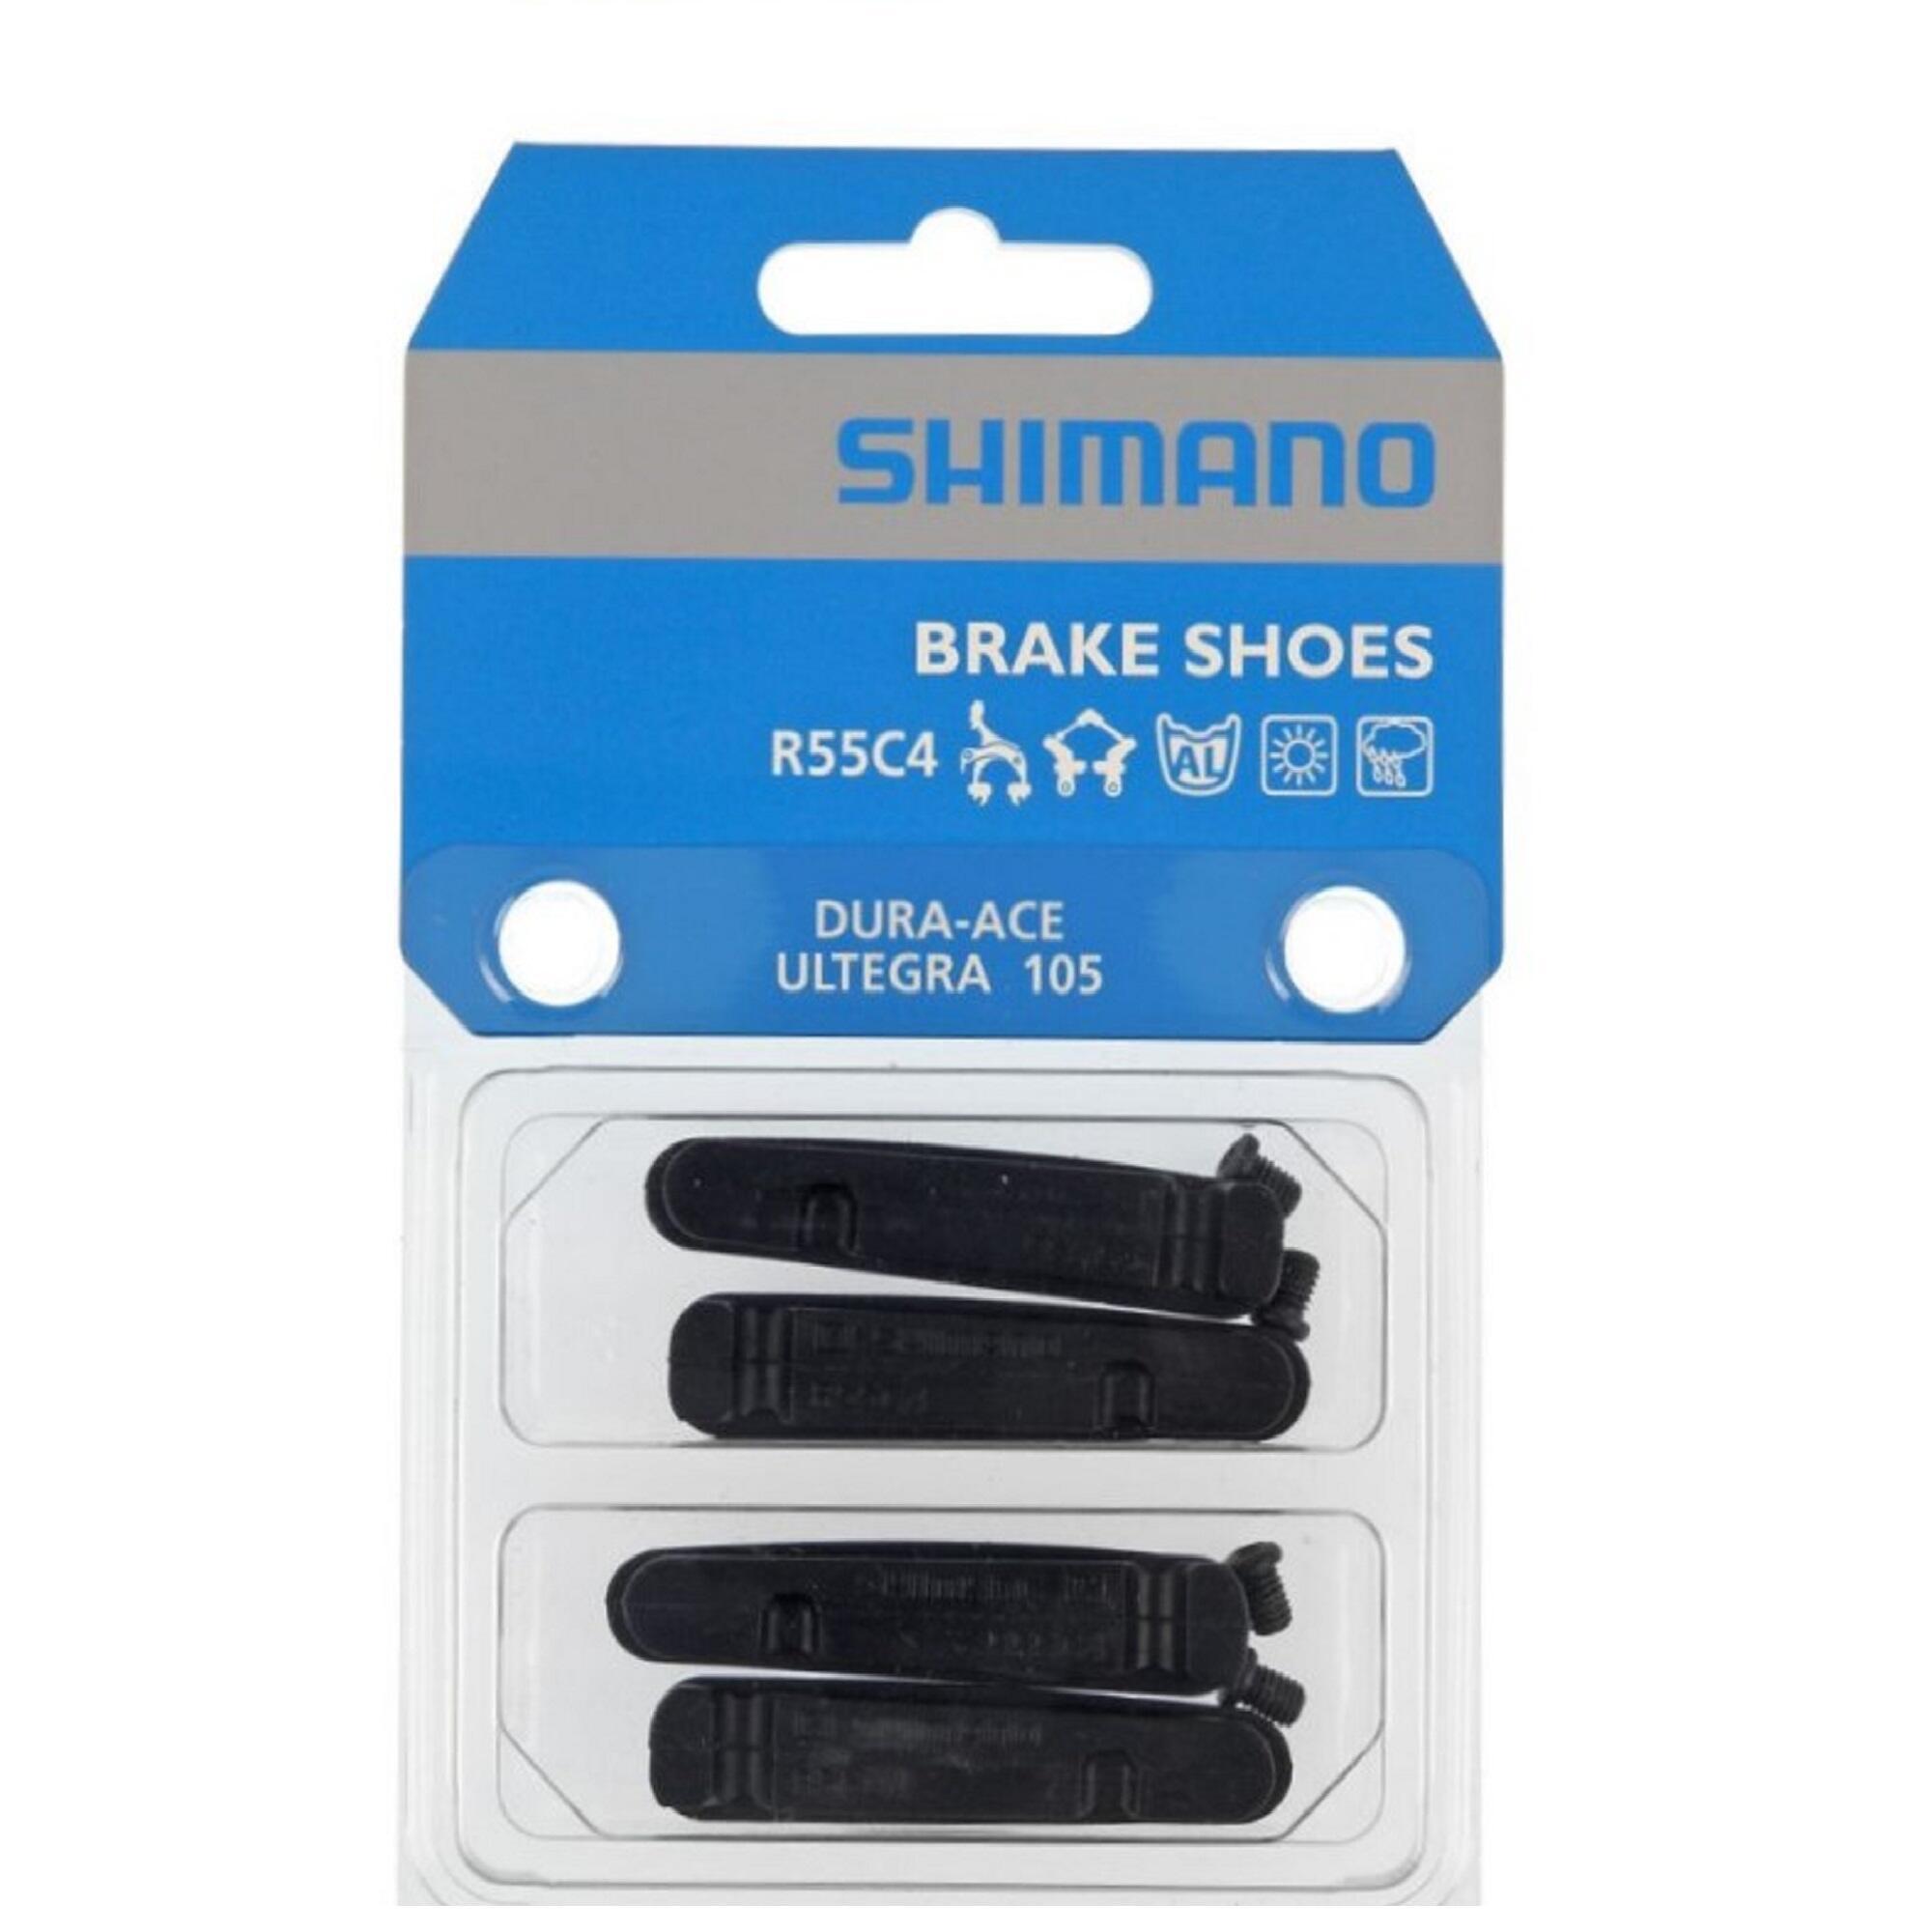 4 Тормозные колодки Shimano R55C4 Ultegra/Dura Ace вкладыш тормозной колодки шоссейный shimano r55c4 2 пары для da ultegra 105 y8l298062